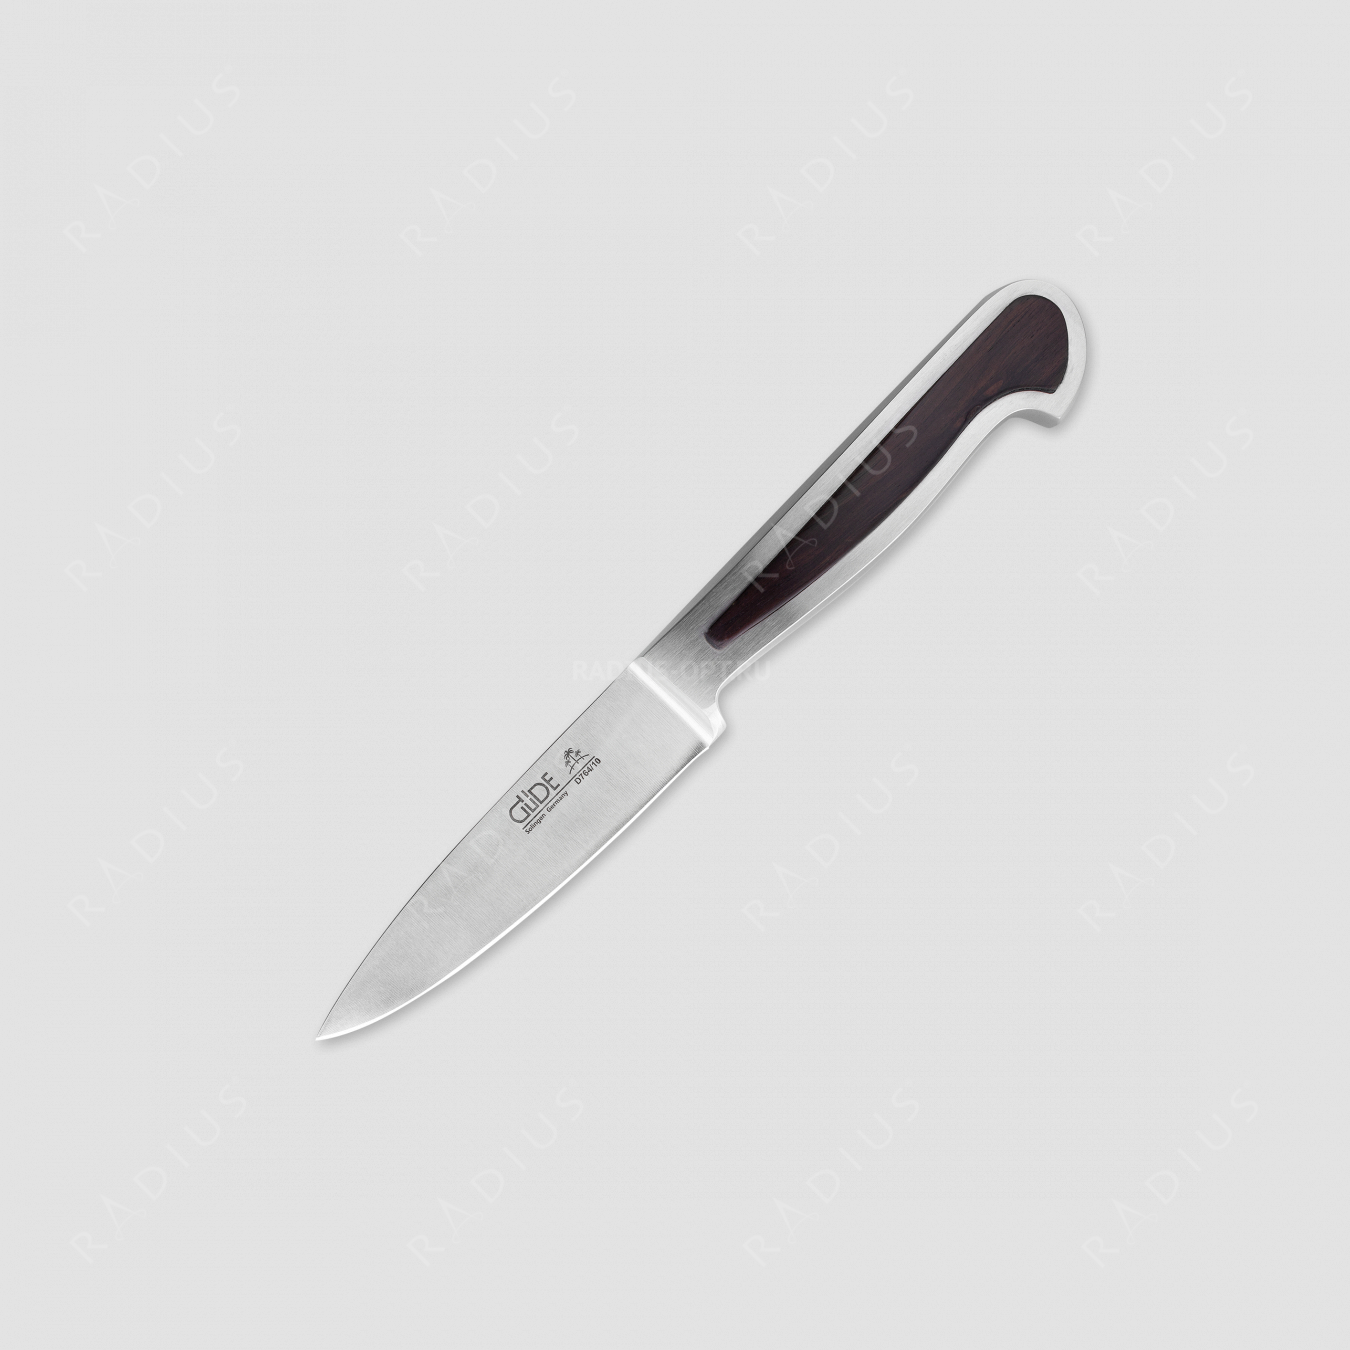 Нож универсальный 10 см, серия Delta, GUDE, Германия